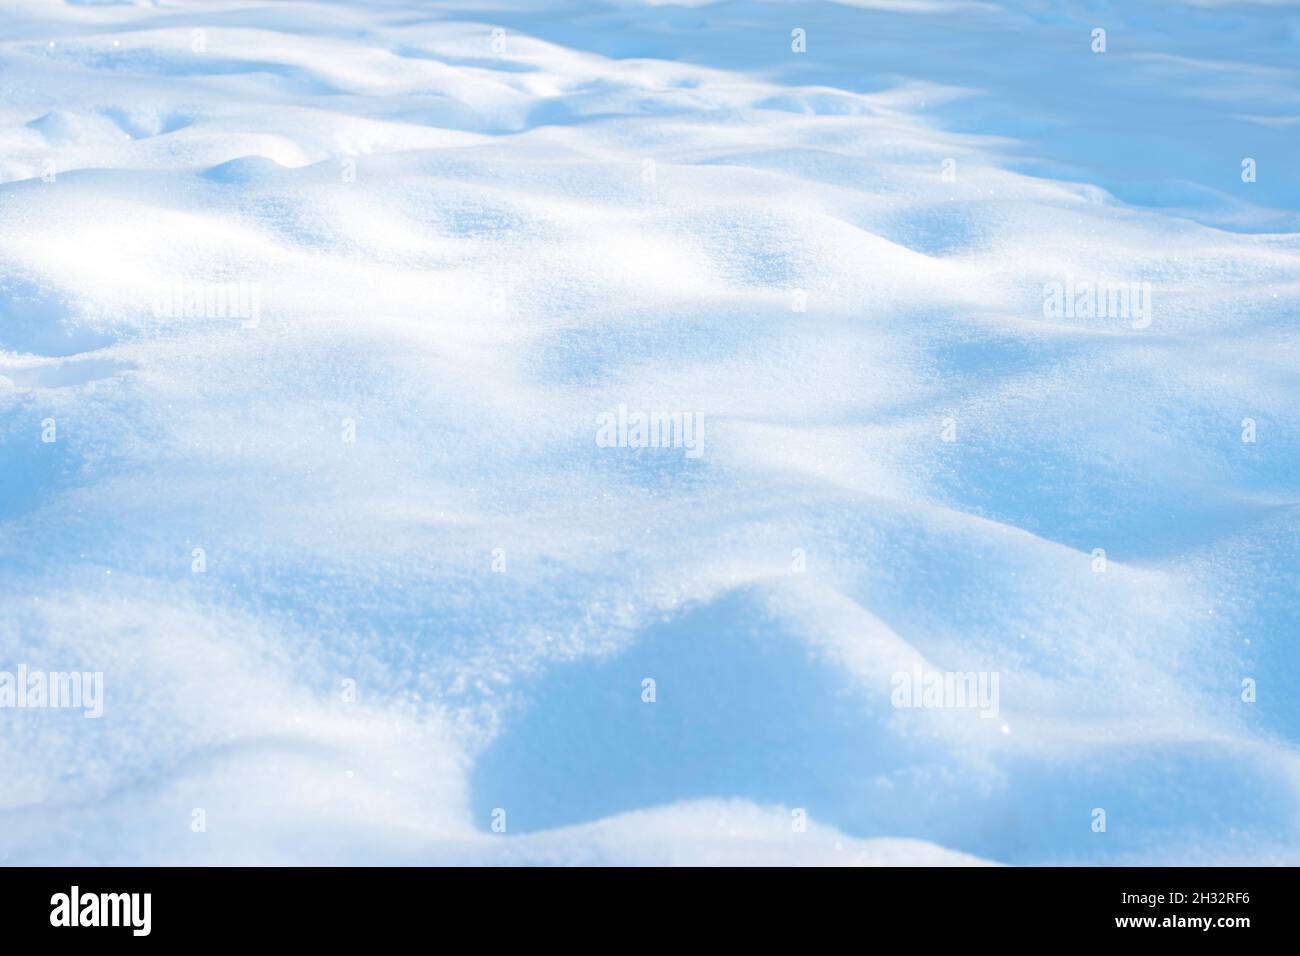 Sonniger Winter weißer Schnee Hintergrund mit blauen Schattierungen von Drifts Stockfoto